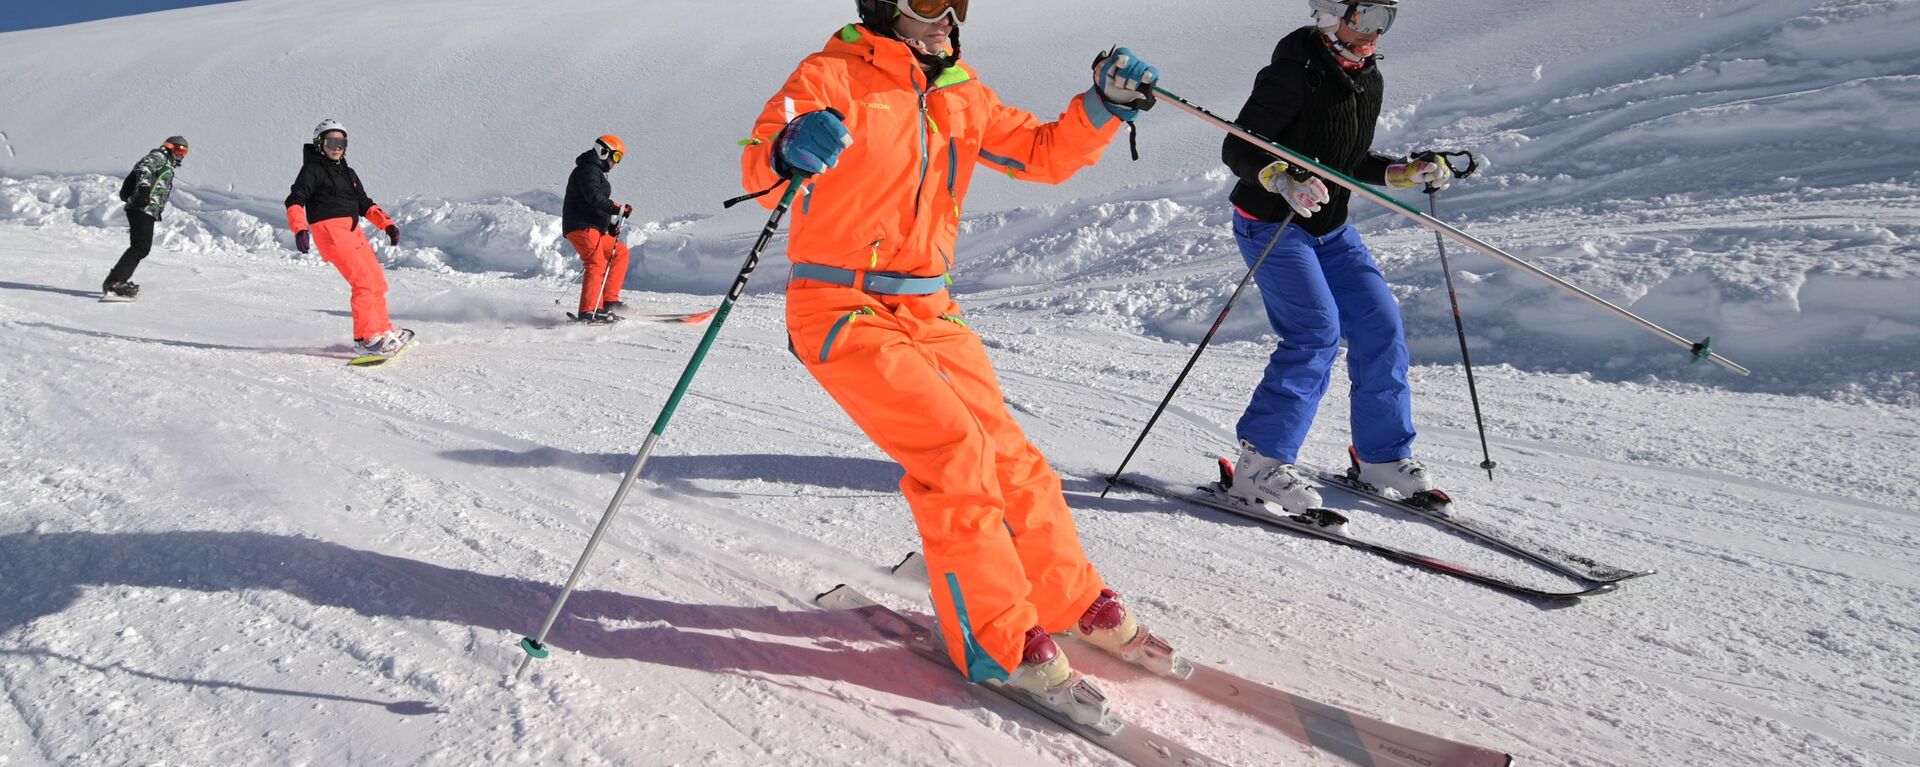 Скијаши уживају на скијалишту „Роза Хутор“ у Сочију. Локалне власти очекују да ће за 10 дана новогодишњих празника у Сочију одмарати преко 250.000 туриста. - Sputnik Србија, 1920, 21.12.2021